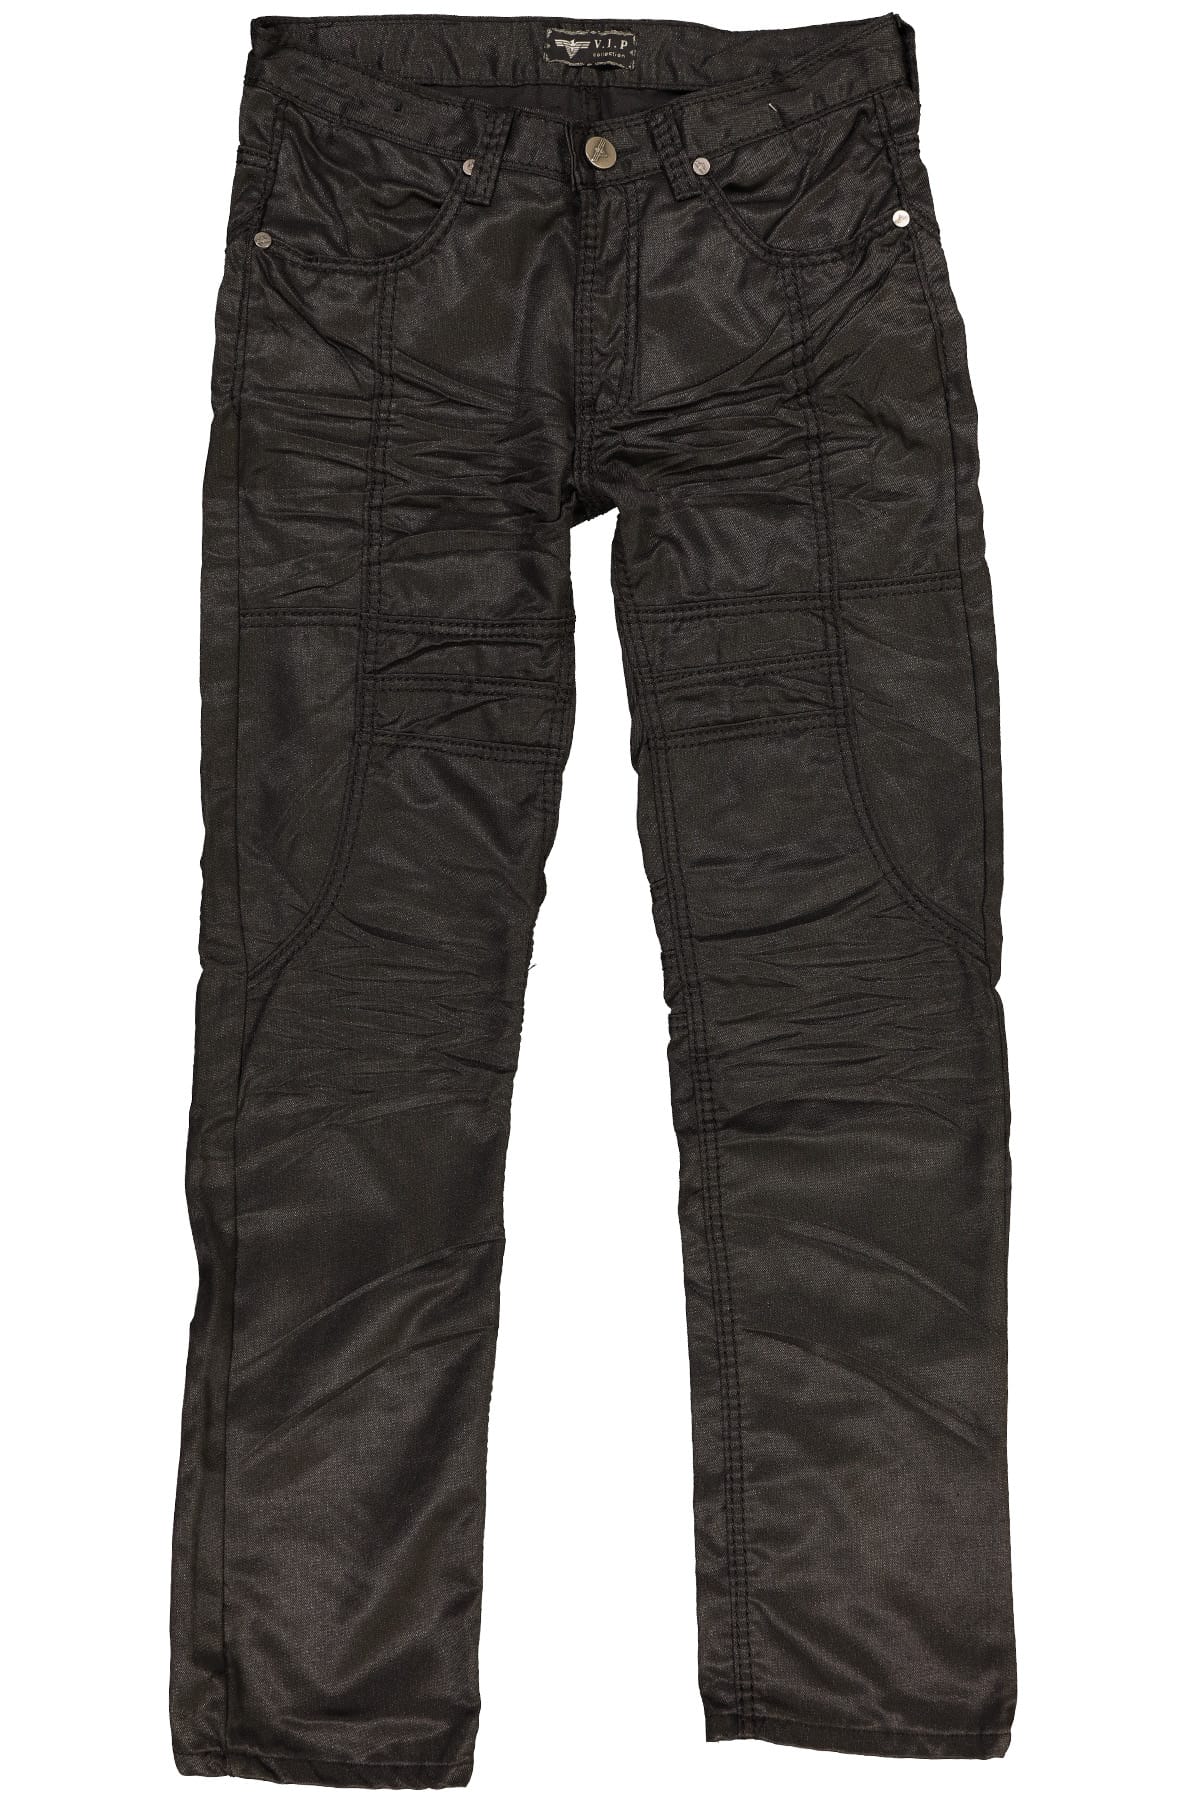 V.I.P. Collection Black Dempo Jean